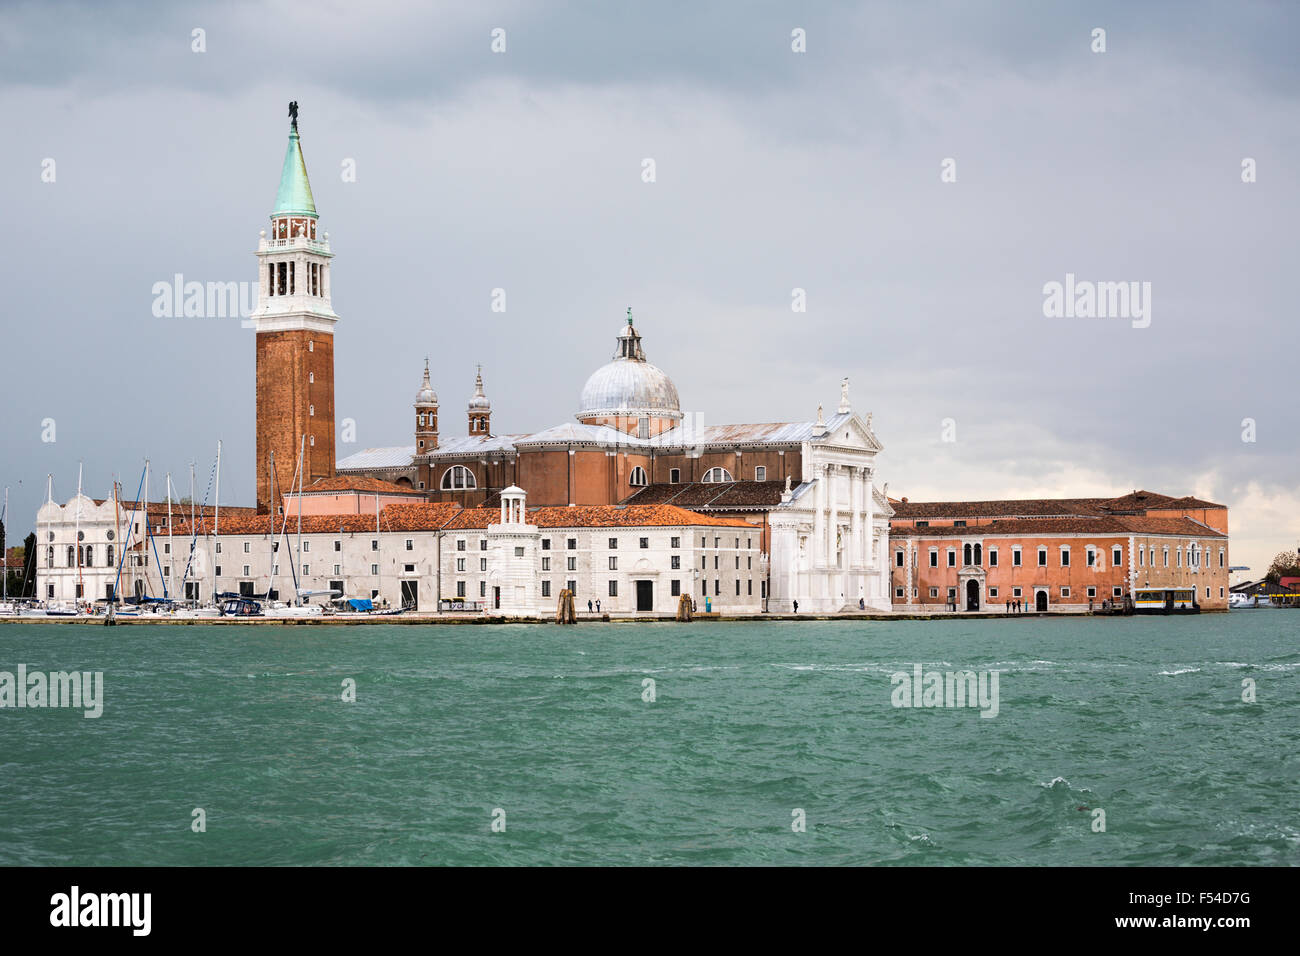 San Giorgio Maggiore, Venice, Italy Stock Photo